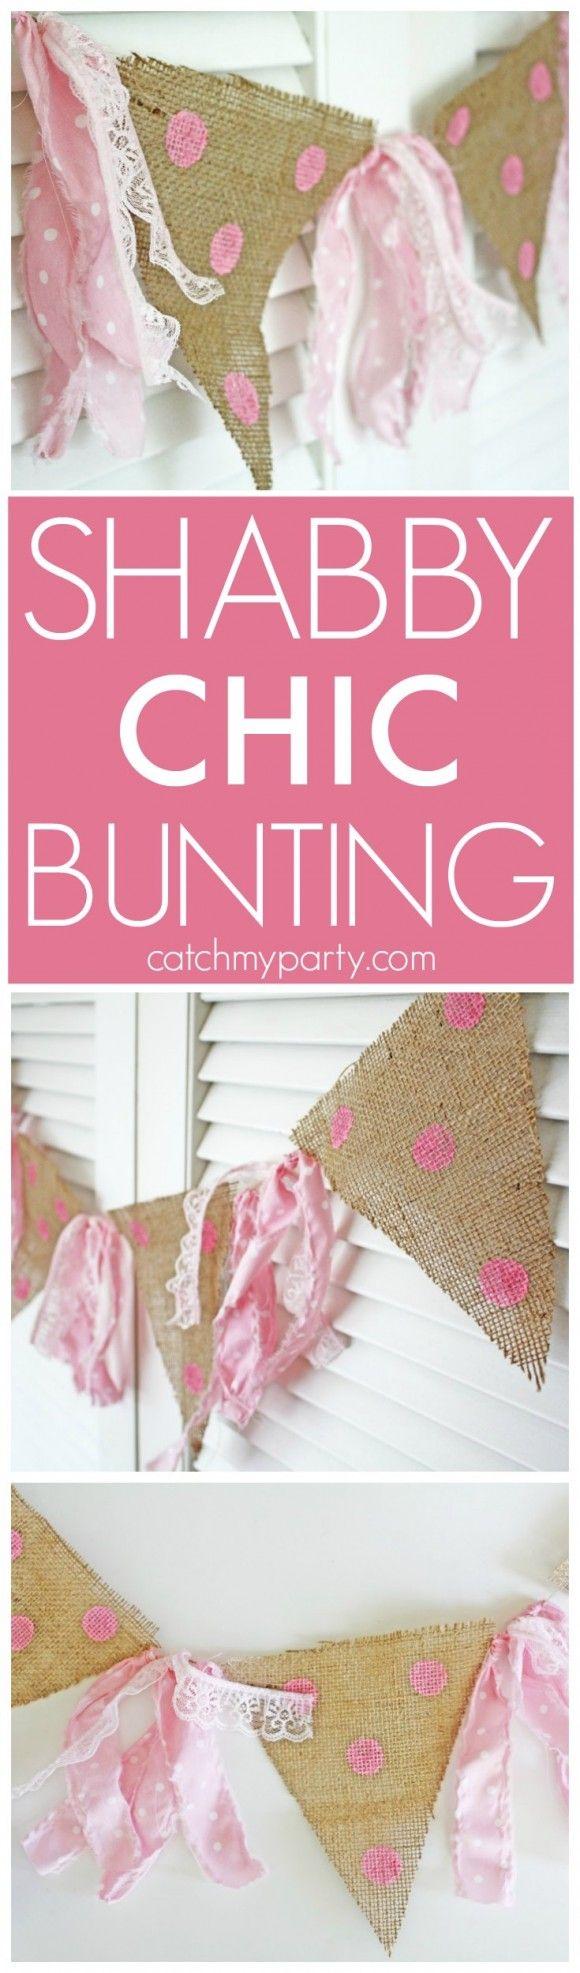 Wedding - Shabby Chic Bunting